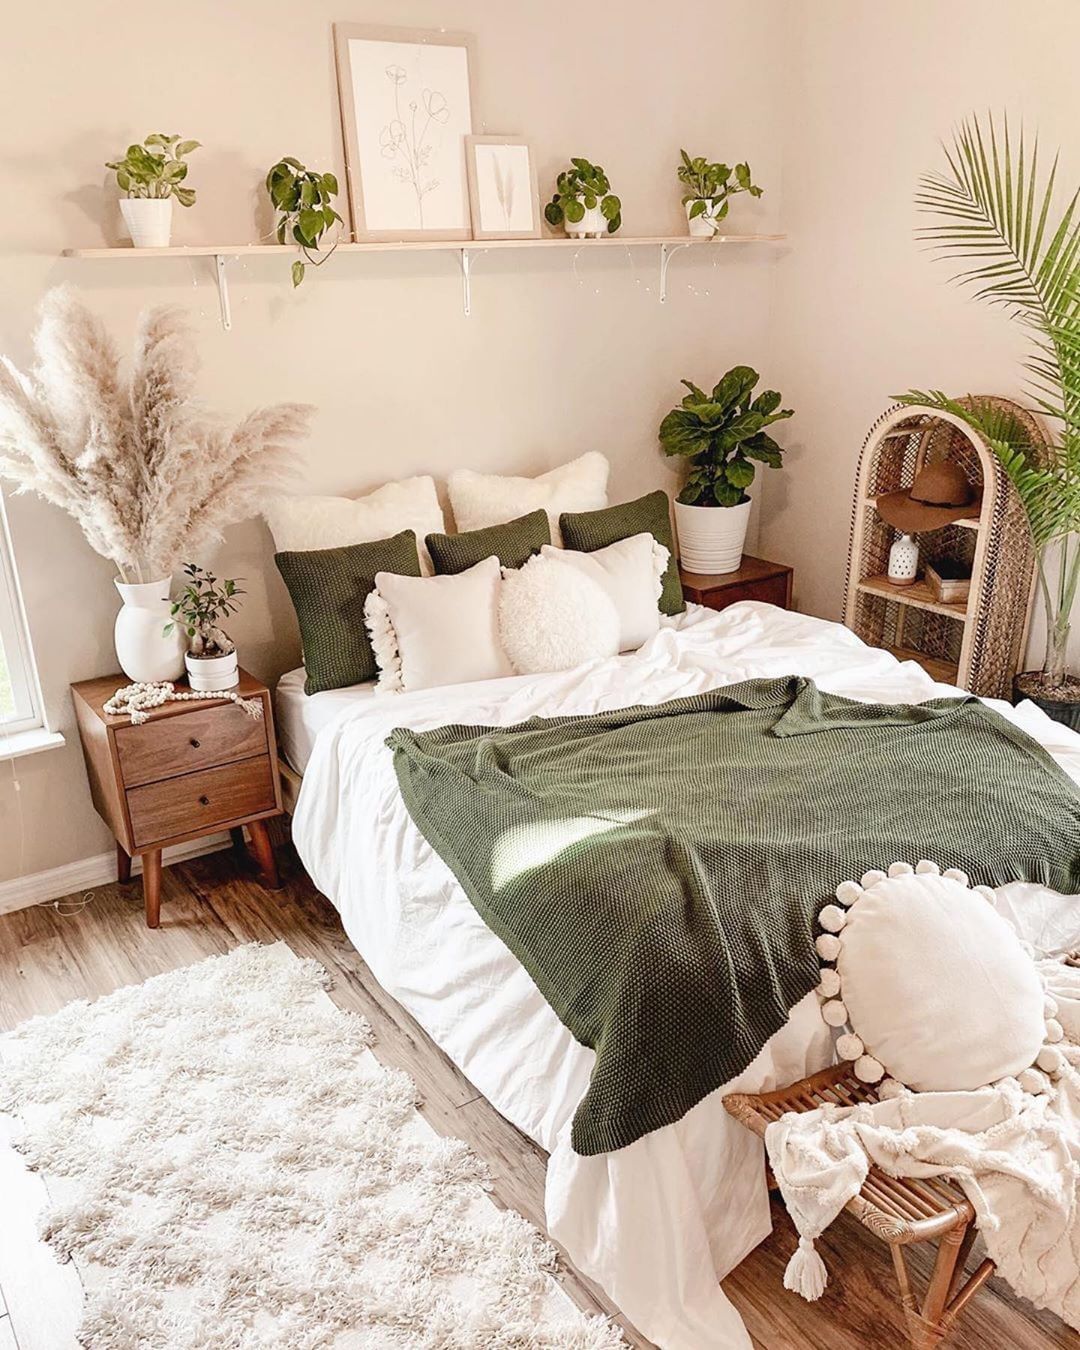 Green boho bedroom decor - Green boho bedroom decor -   18 home diy Bedroom ideas